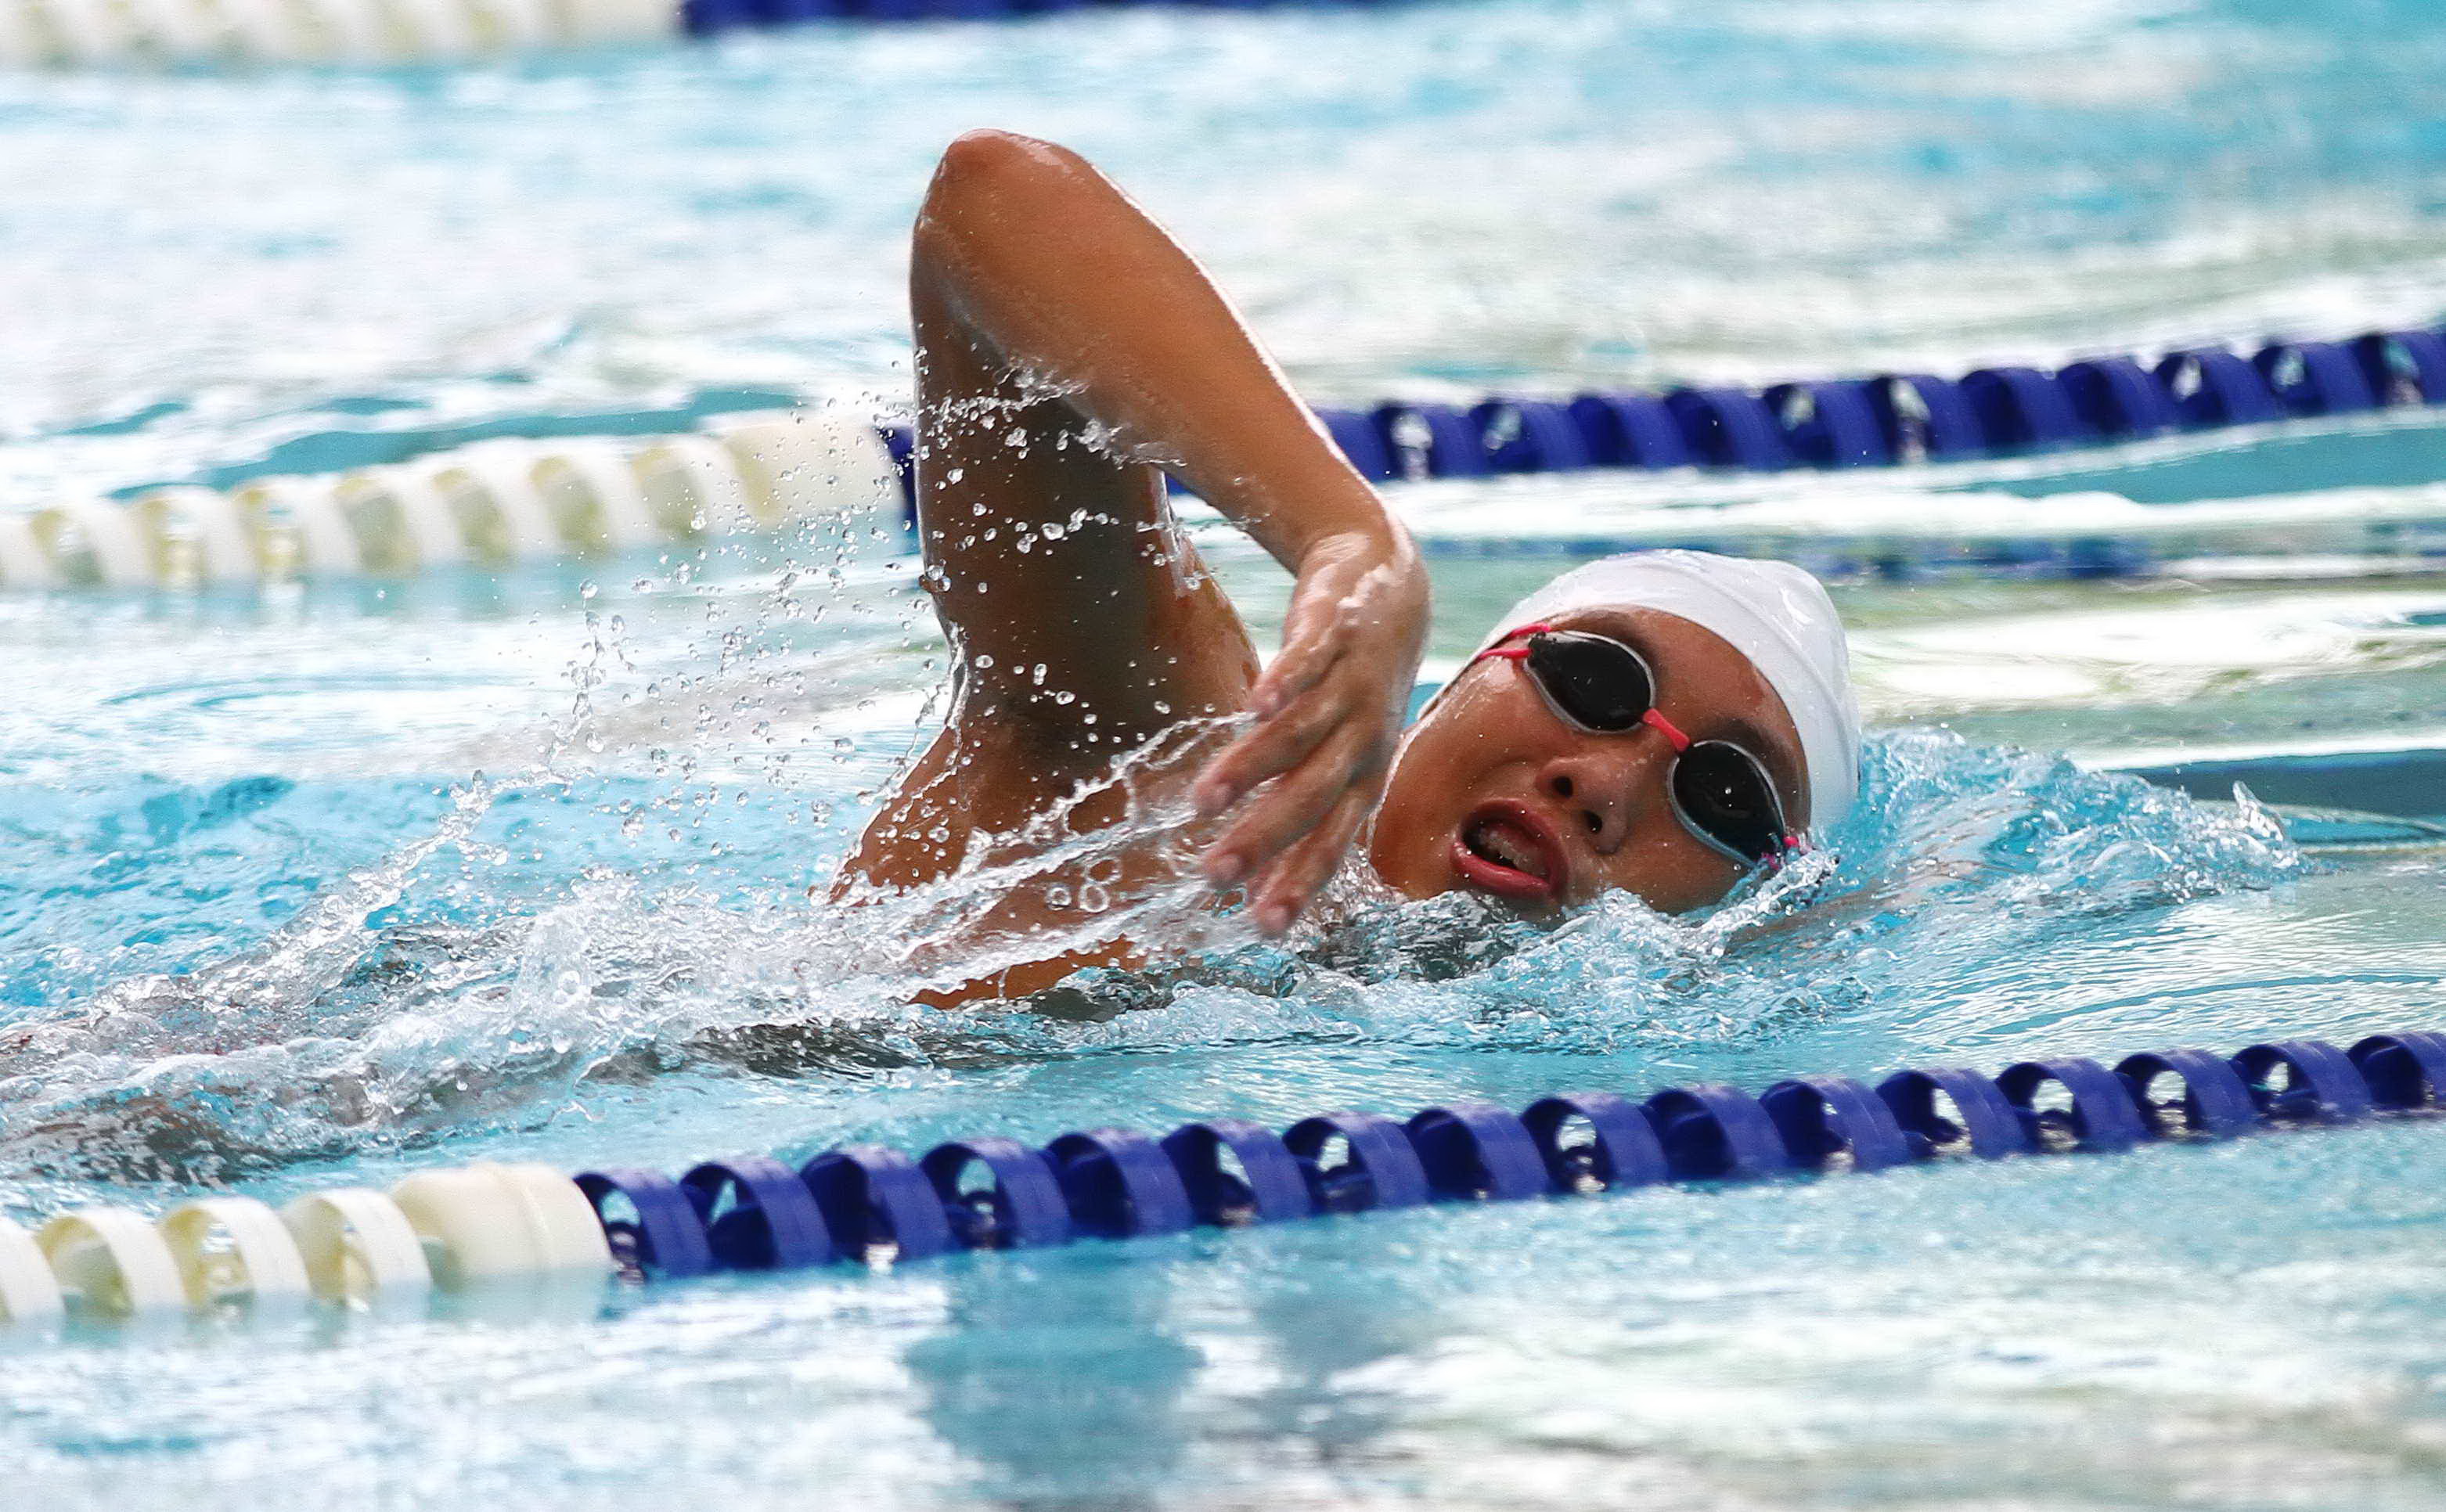 Ngoại binh bơi mang đến nhiều cảm xúc và tốc độ cho môn thể thao này. Cùng xem hình ảnh để cảm nhận sự dũng cảm và khéo léo của các vận động viên bơi ngoại binh.